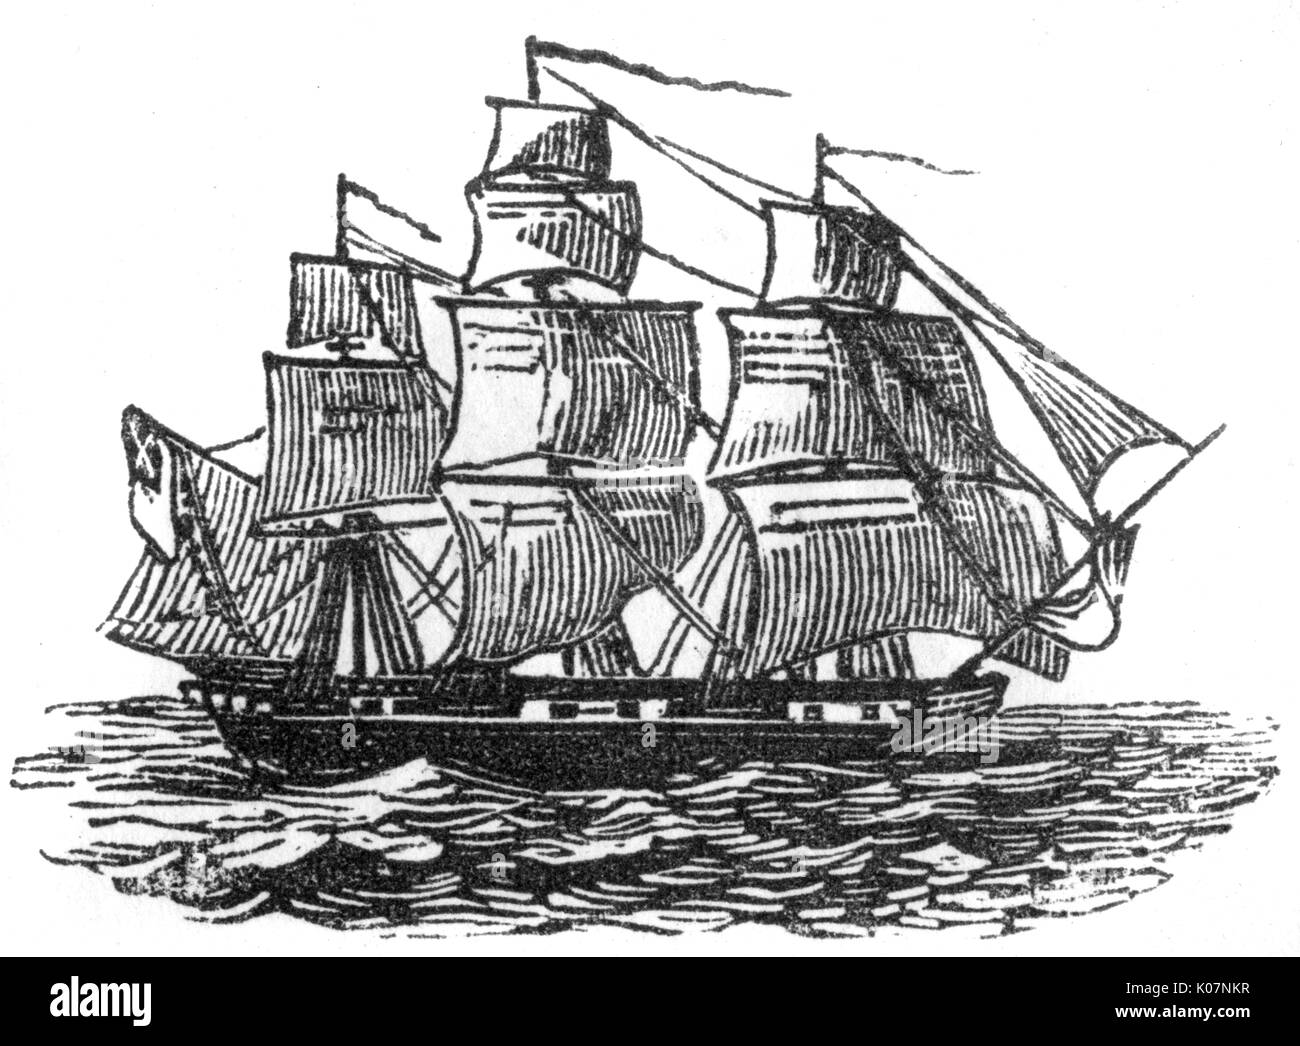 Holzschnitt von einem Segelschiff, c 1800. Datum: C 1800 Stockfoto